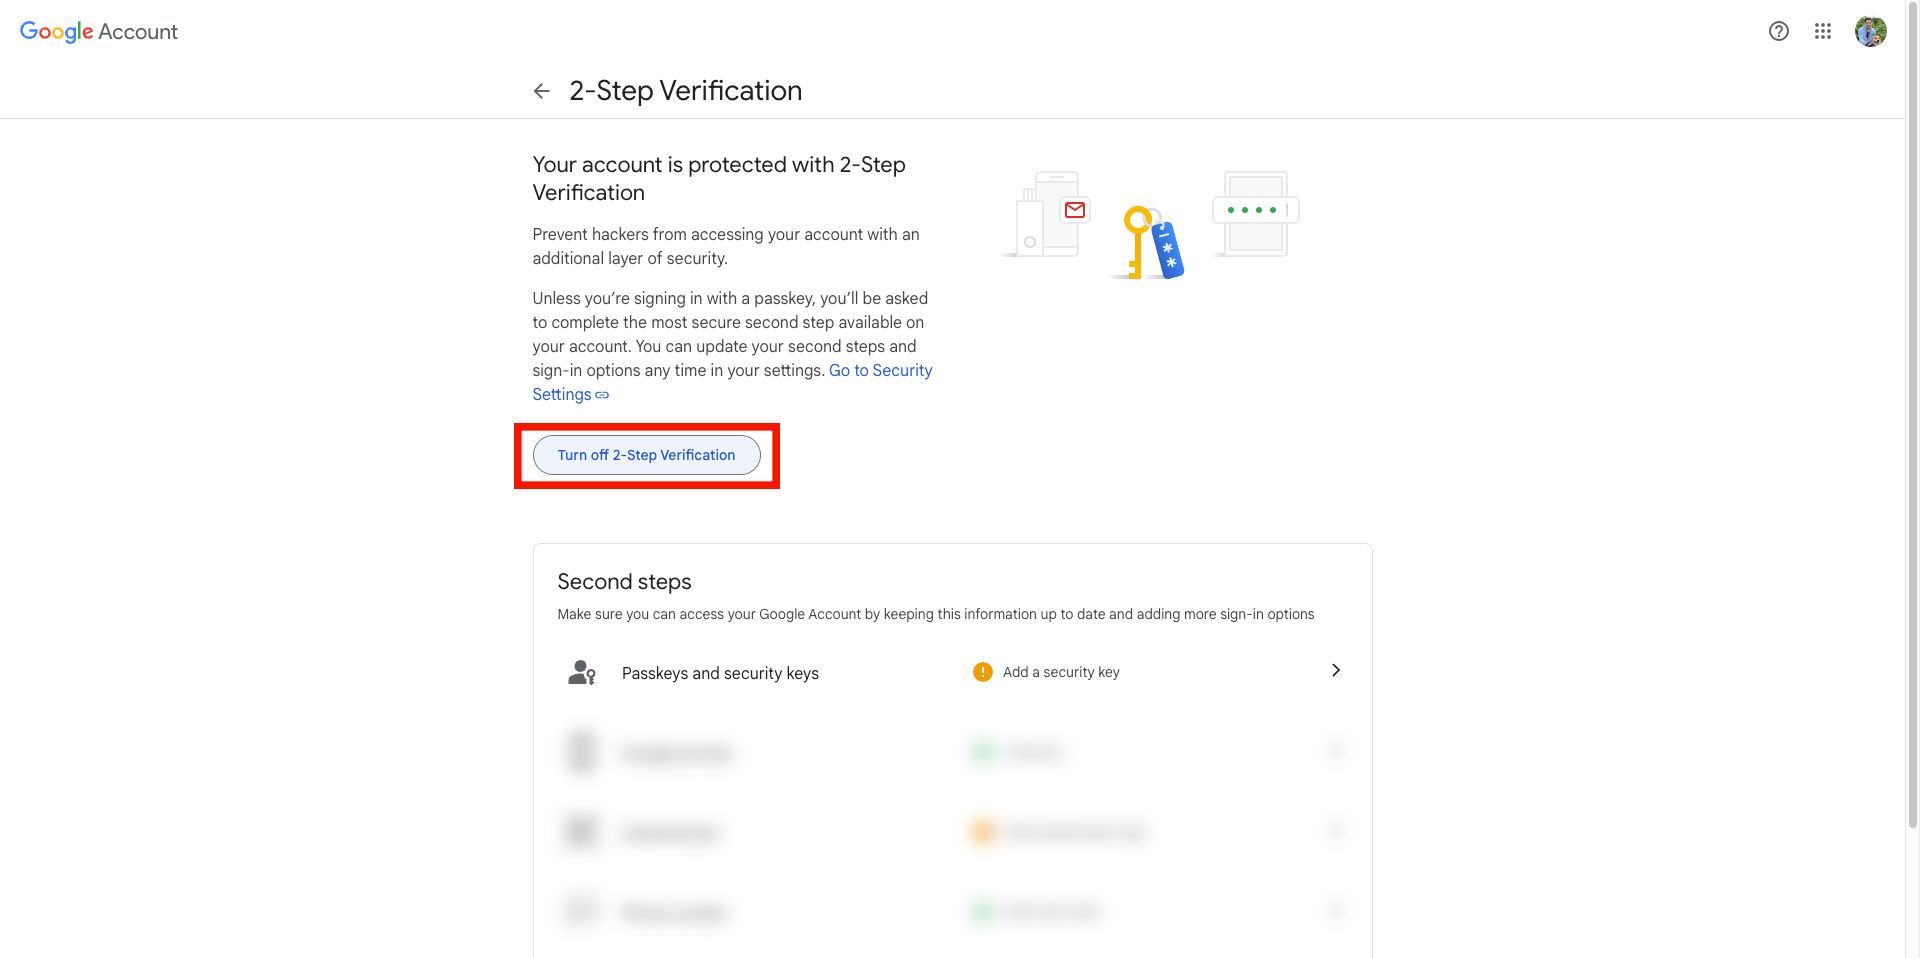 Página de configurações da verificação em duas etapas do Google com uma opção para desativar a verificação em duas etapas e gerenciar chaves de segurança e senhas